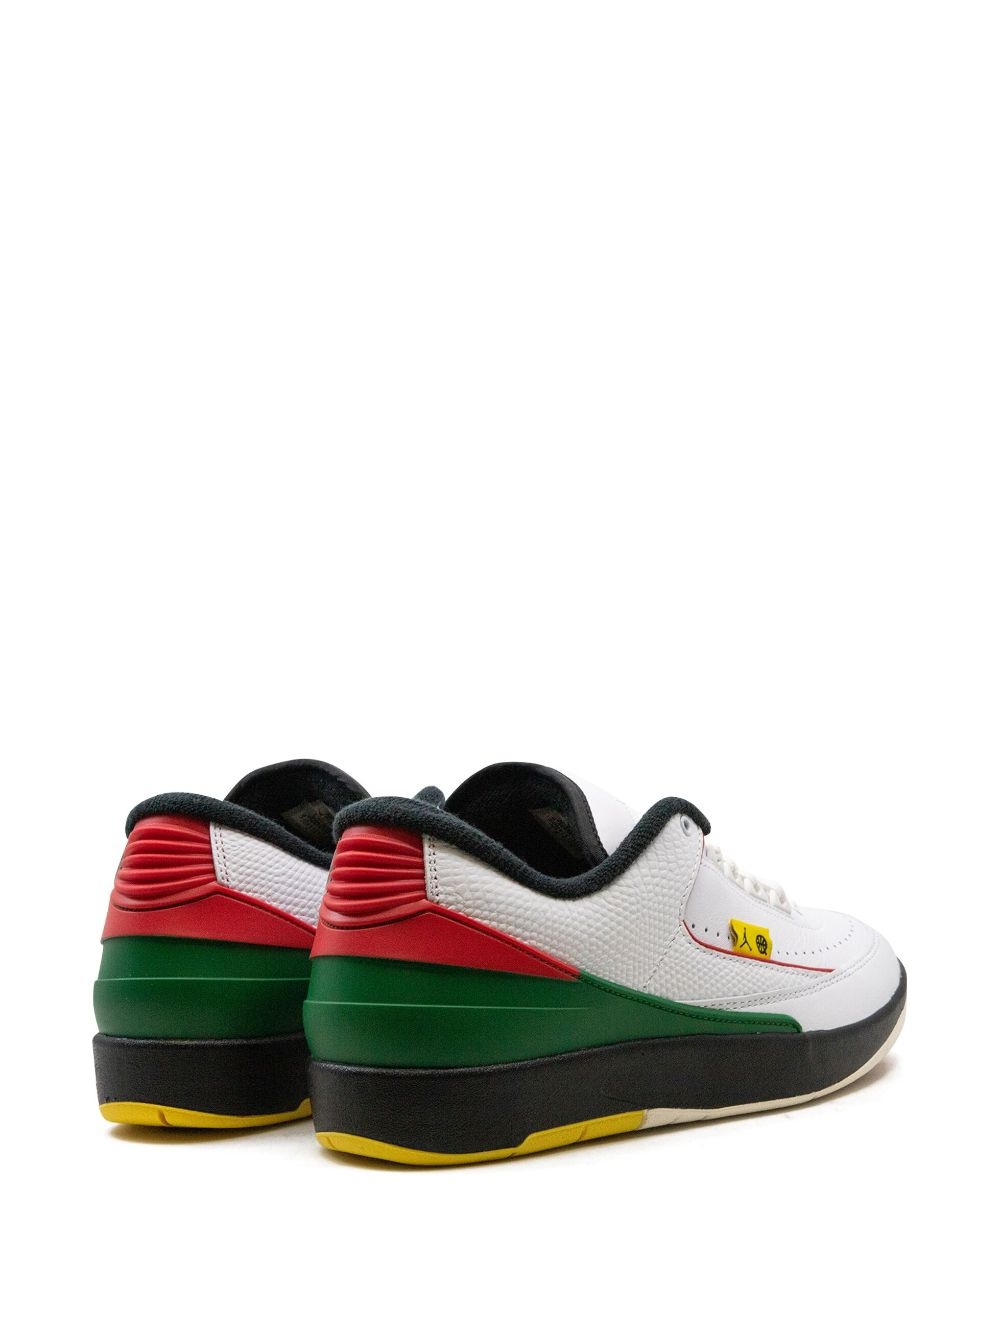 Air Jordan 2 Low âQuai 54â sneakers - 3